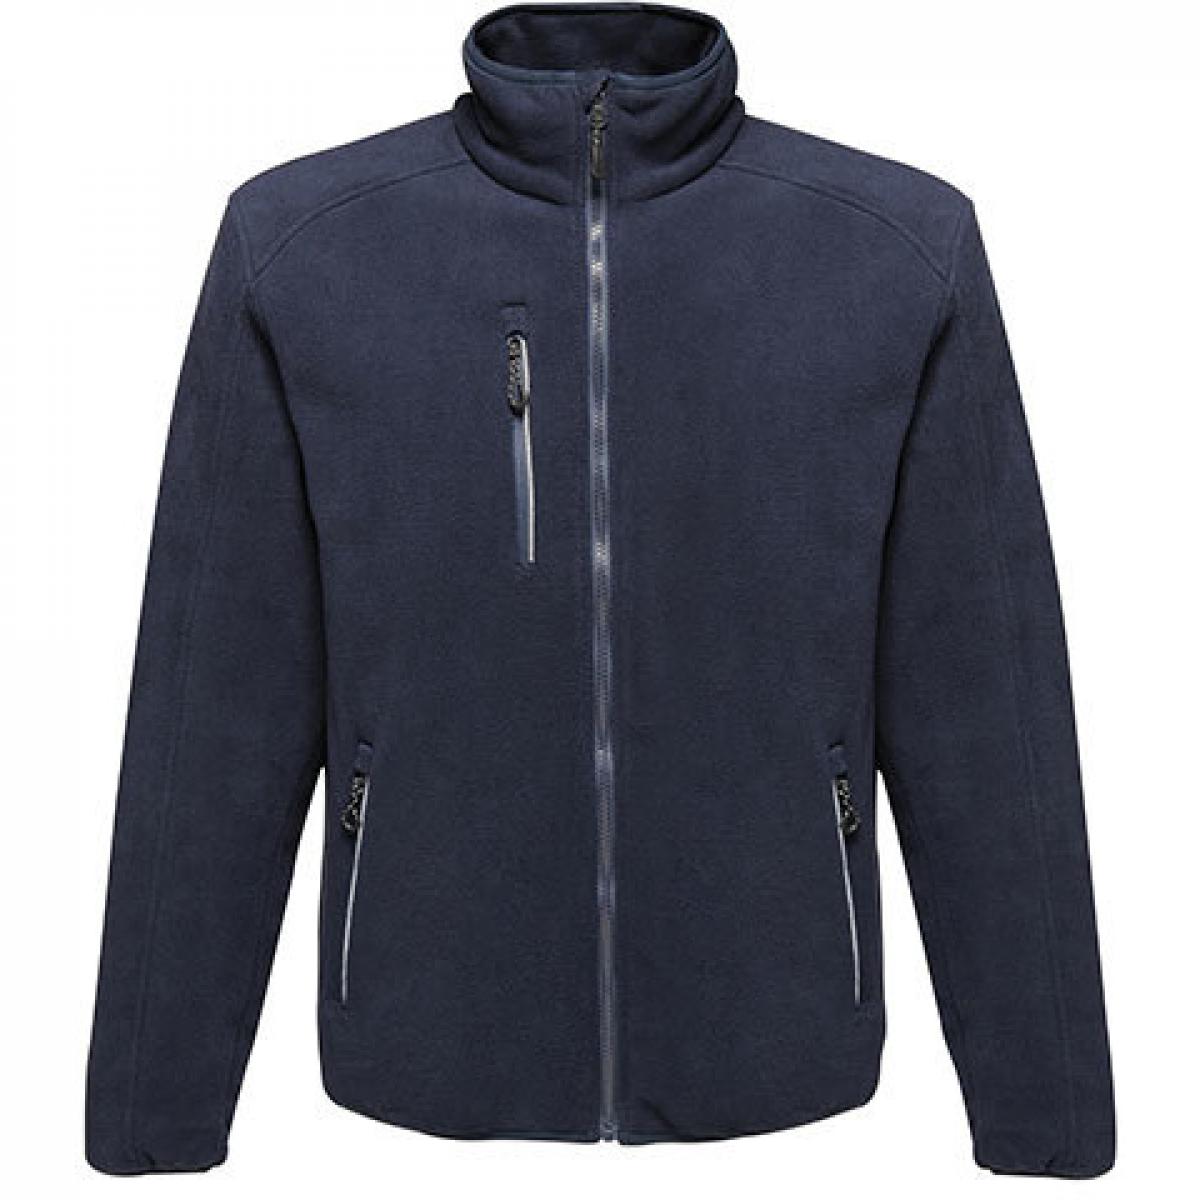 Hersteller: Regatta Herstellernummer: TRA624 Artikelbezeichnung: Herren Omicron III Waterproof Breathable Fleece Jacket Farbe: Navy